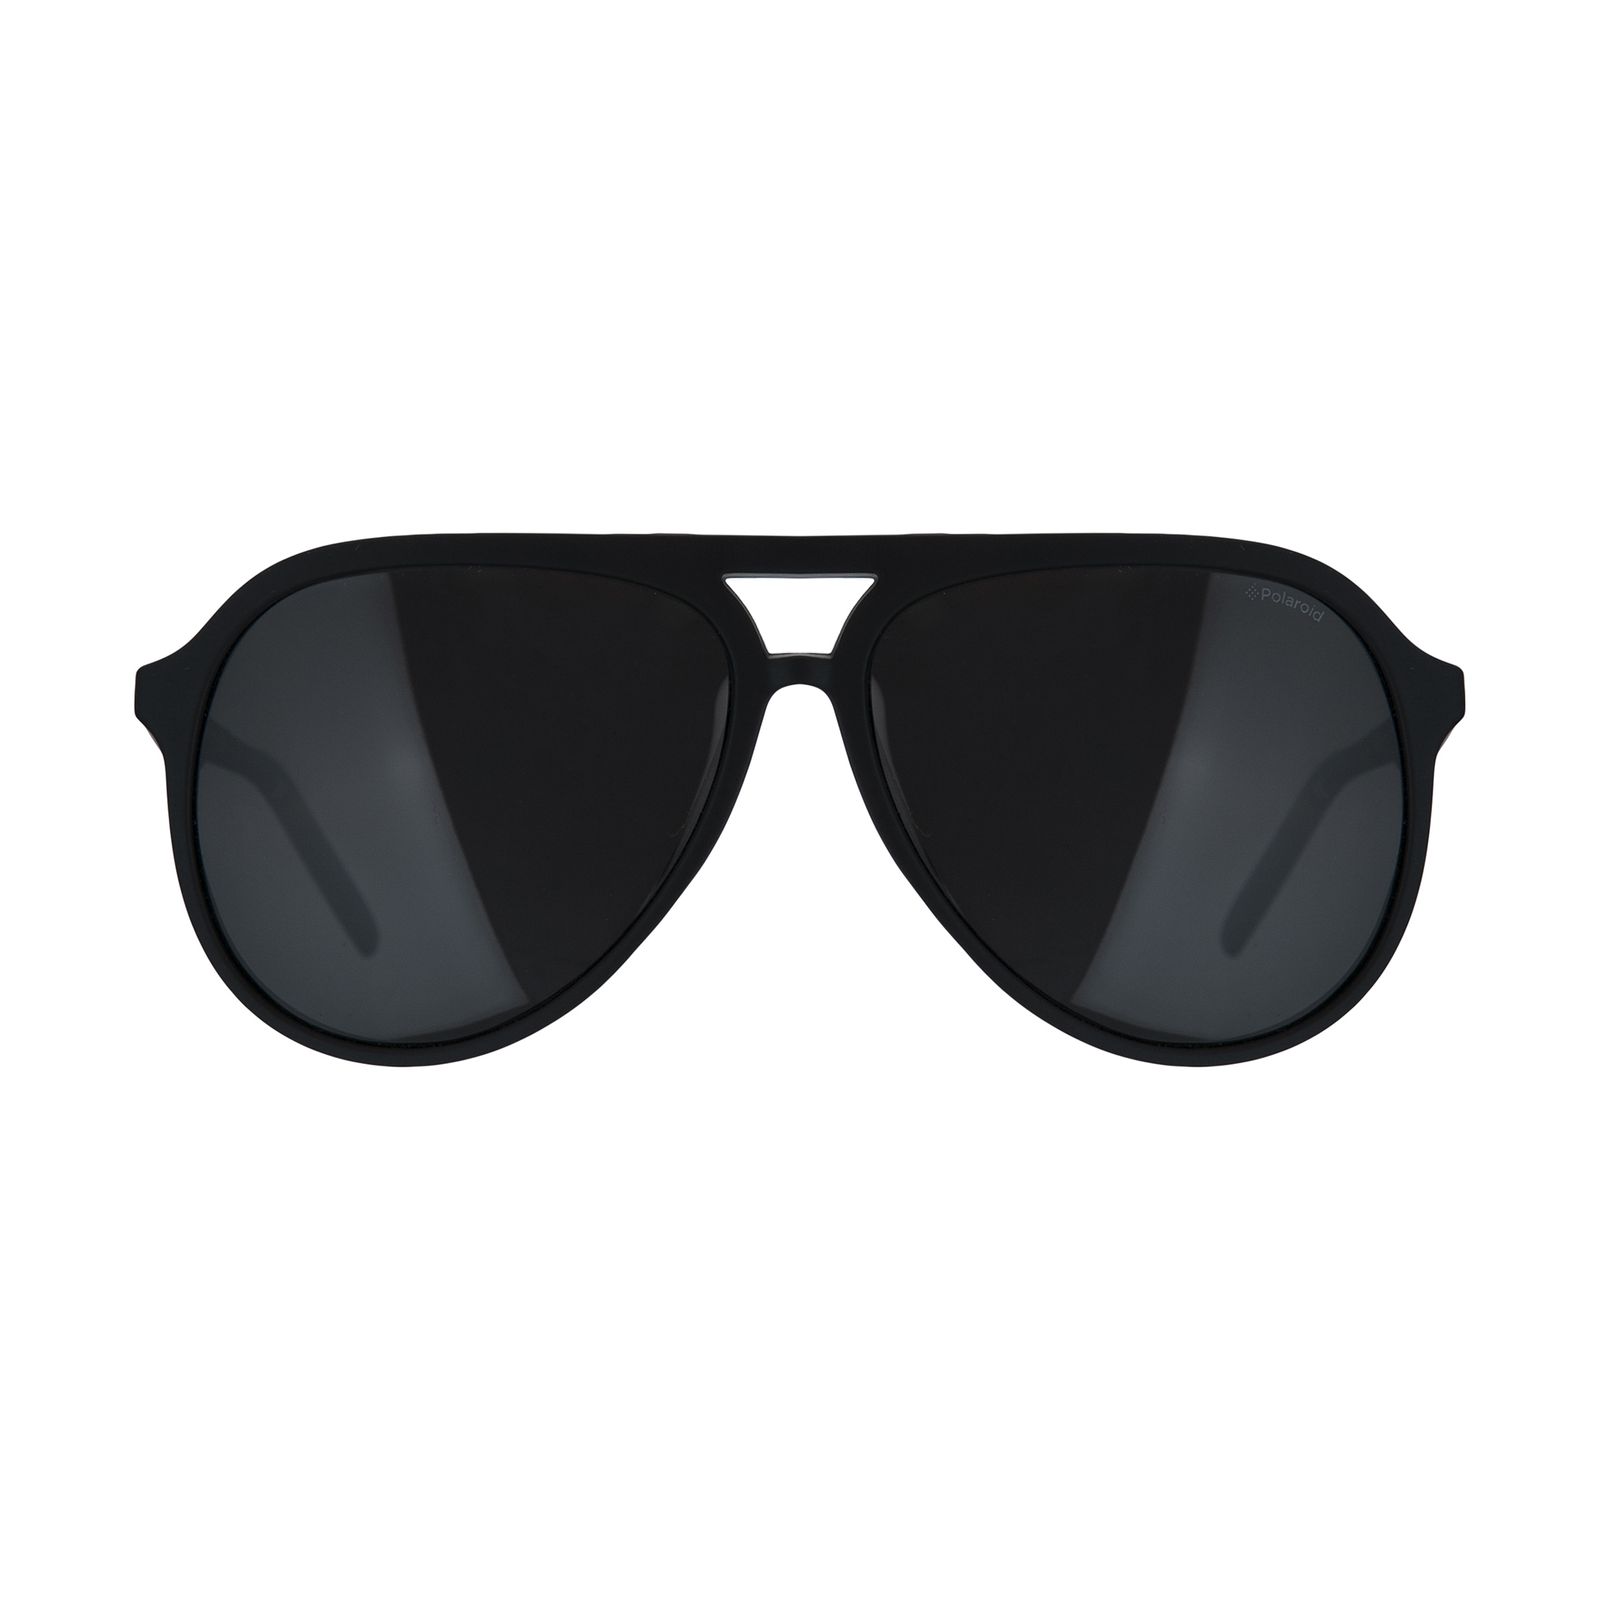 عینک آفتابی مردانه پولاروید مدل pld 2048-mattblack-59 -  - 1